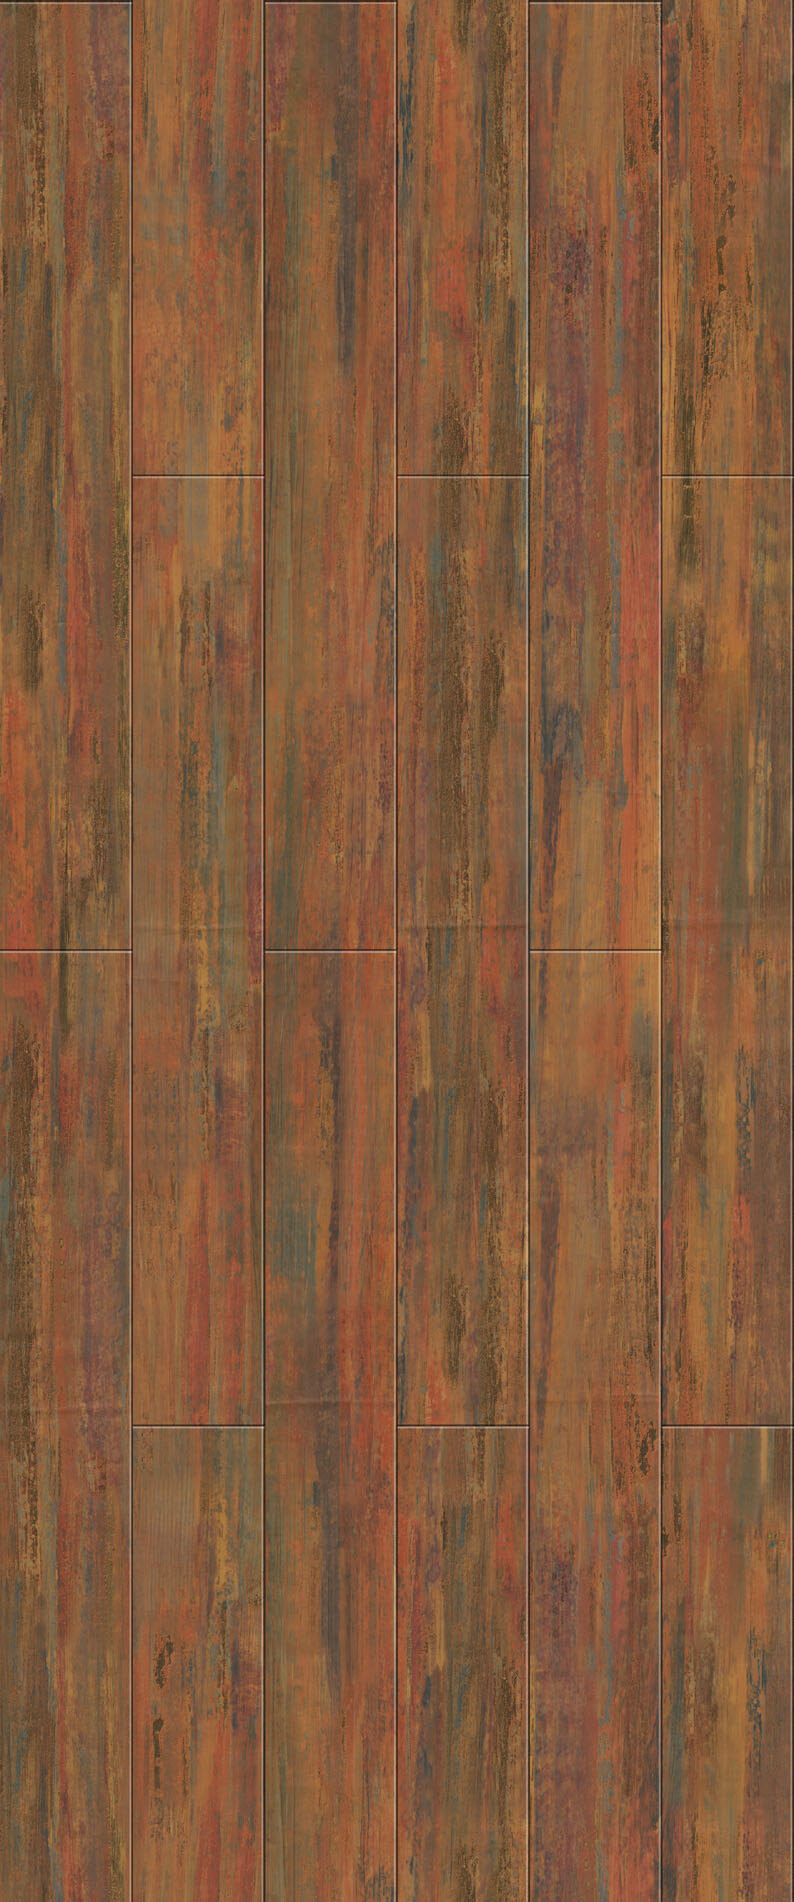 木地板 贴图 地板 木材贴图 木地板贴图 木地板效果图 木地板材质 地板设计素材